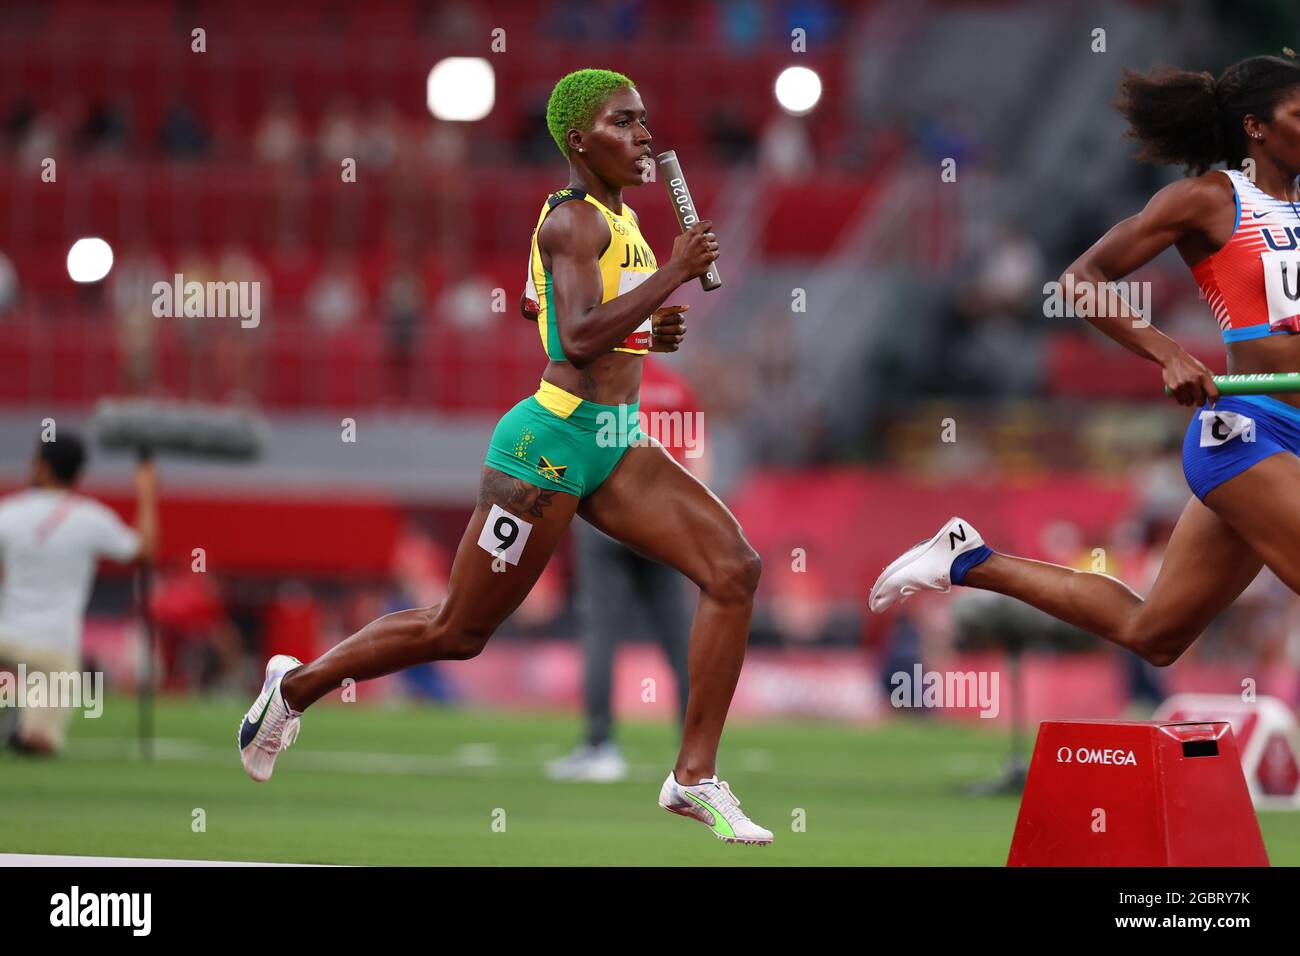 RUSSELL Janieve (JAM), 5 AGOSTO 2021 - Atletica : relè 4x400m femminile - calore durante i Giochi Olimpici di Tokyo 2020 allo Stadio Nazionale di Tokyo, Giappone. (Foto di Naoki Morita/AFLO SPORT) Foto Stock